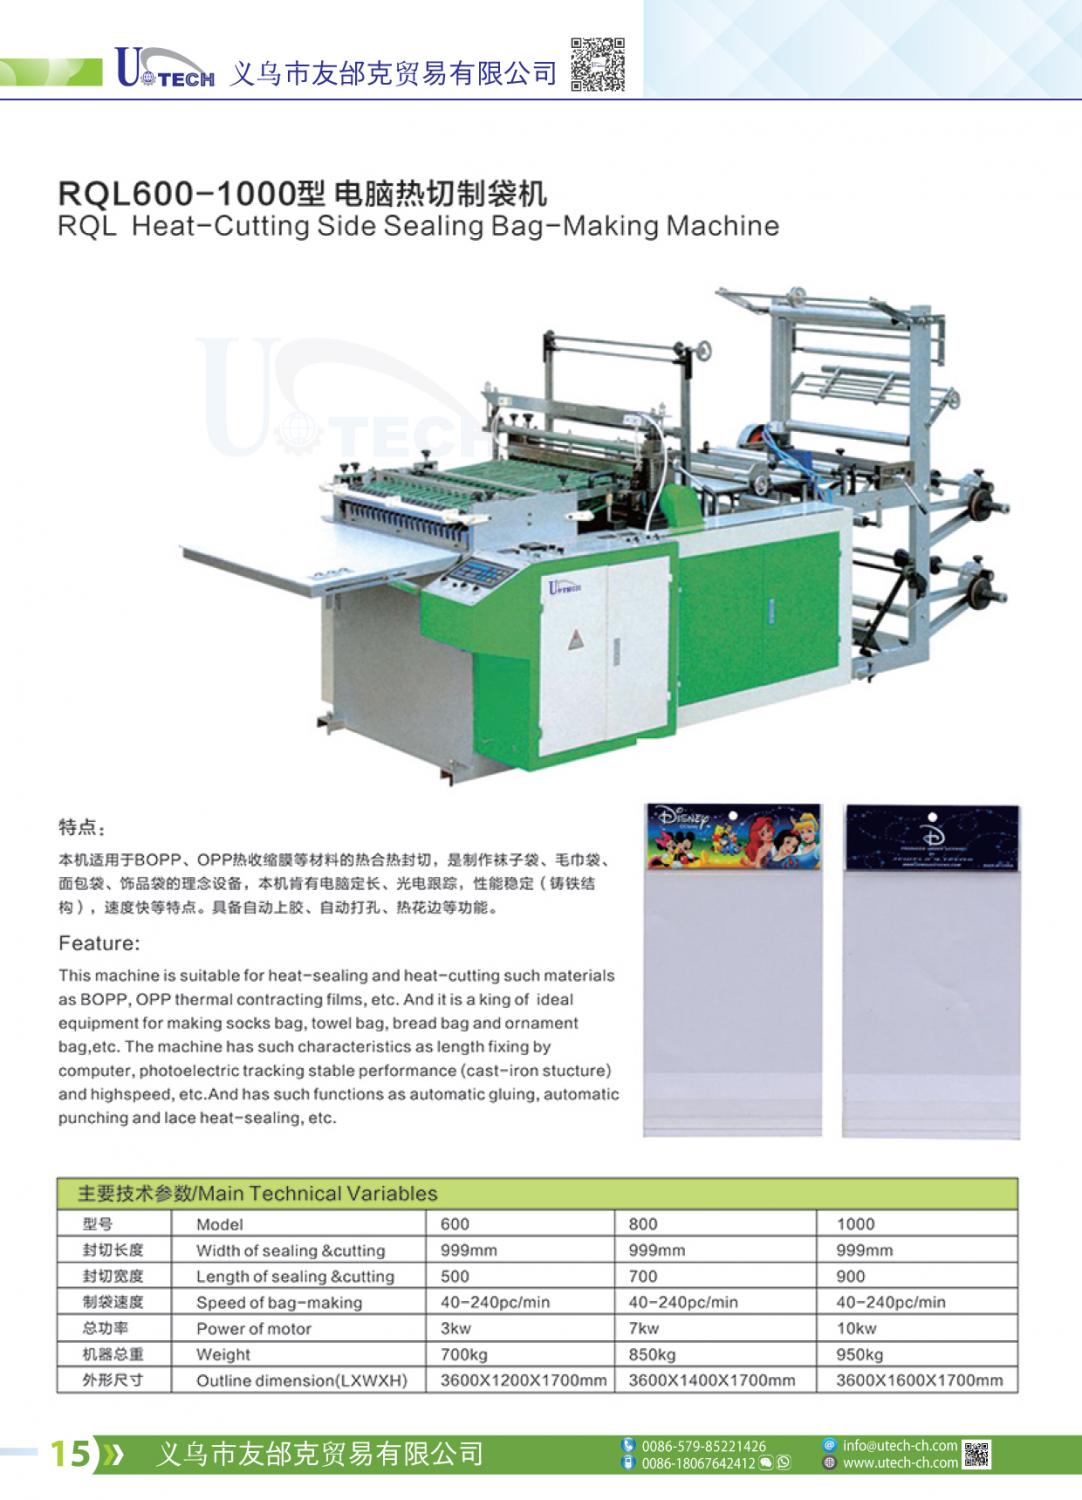 RQL600-1000 Heat-Cutting Side Sealing Bag-Making Machine